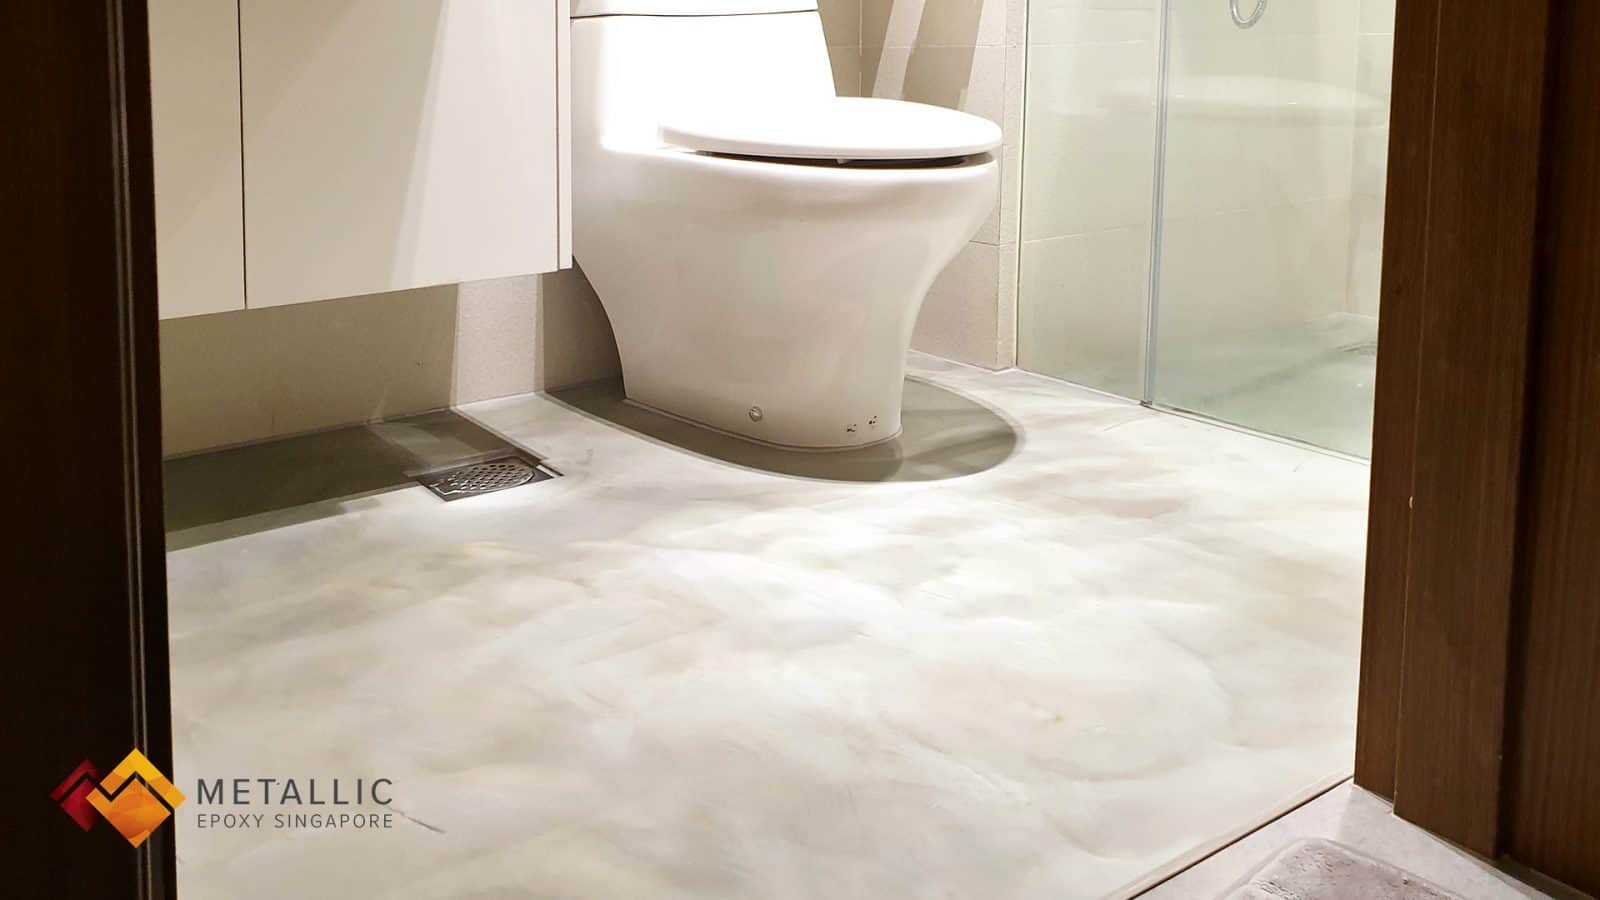 Metallic Epoxy Concrete Bathroom Floor